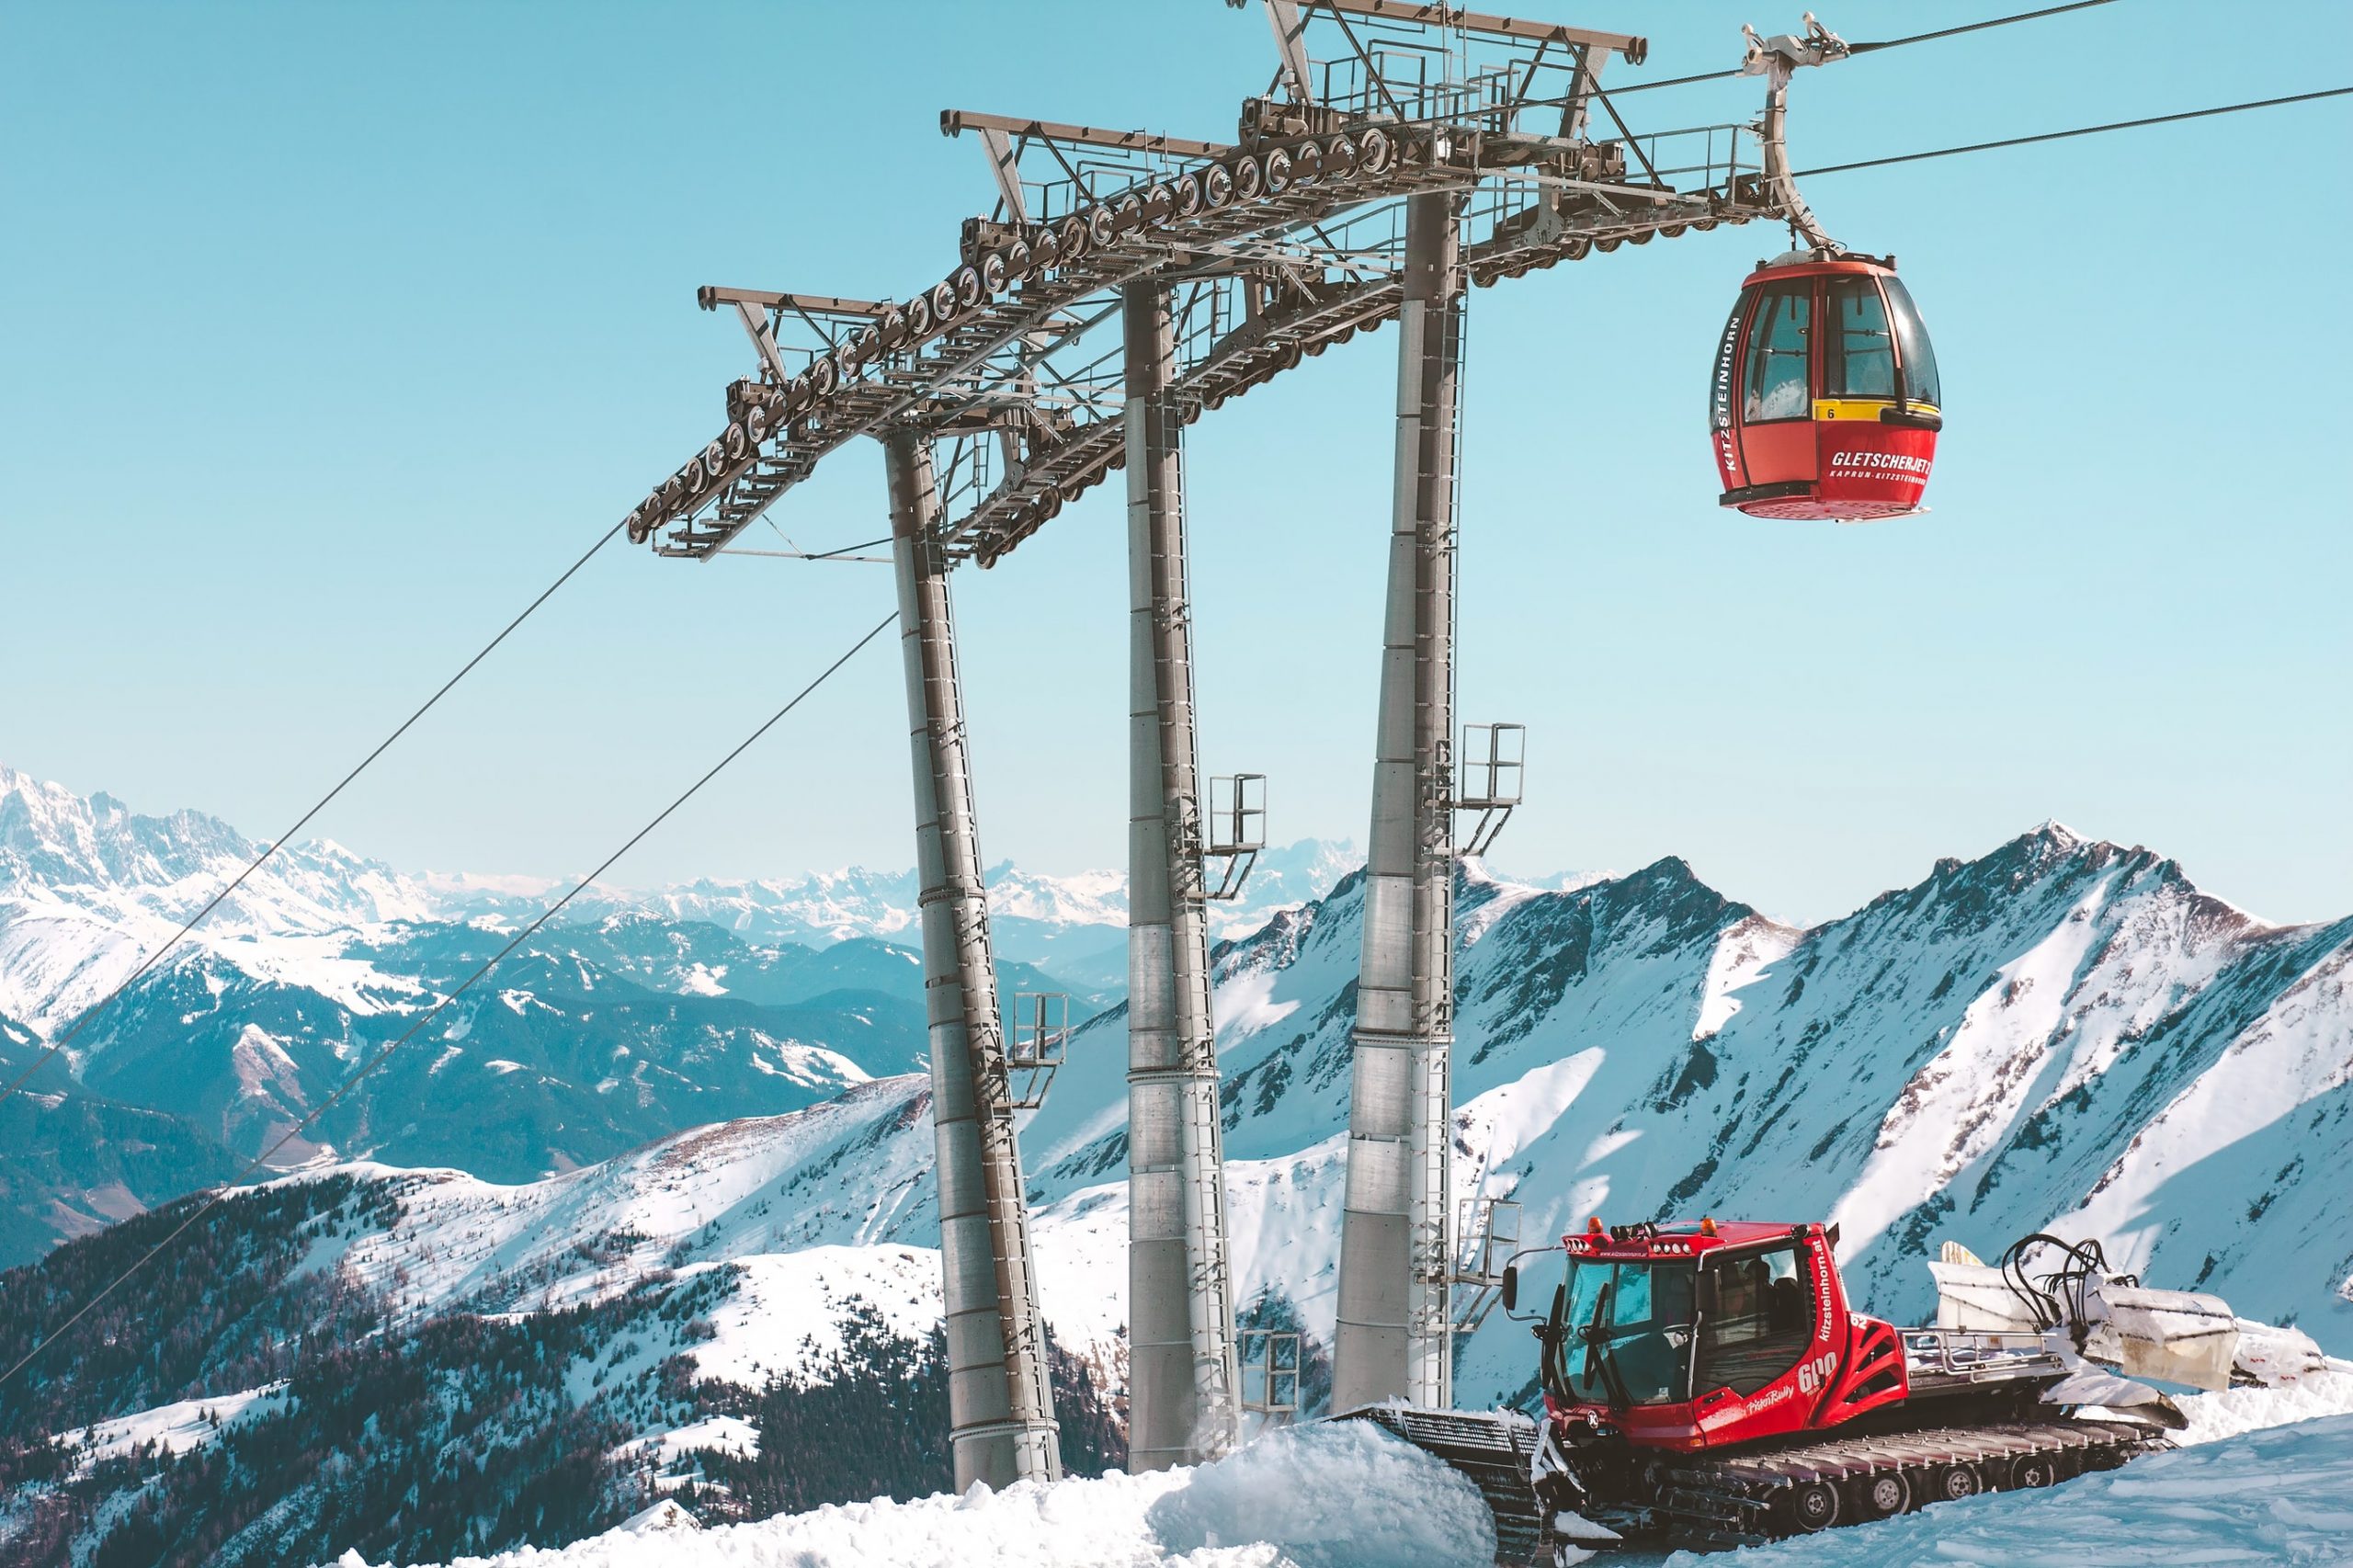 Billig skiferie til Østrig - Kør selv & Spar penge skirejse